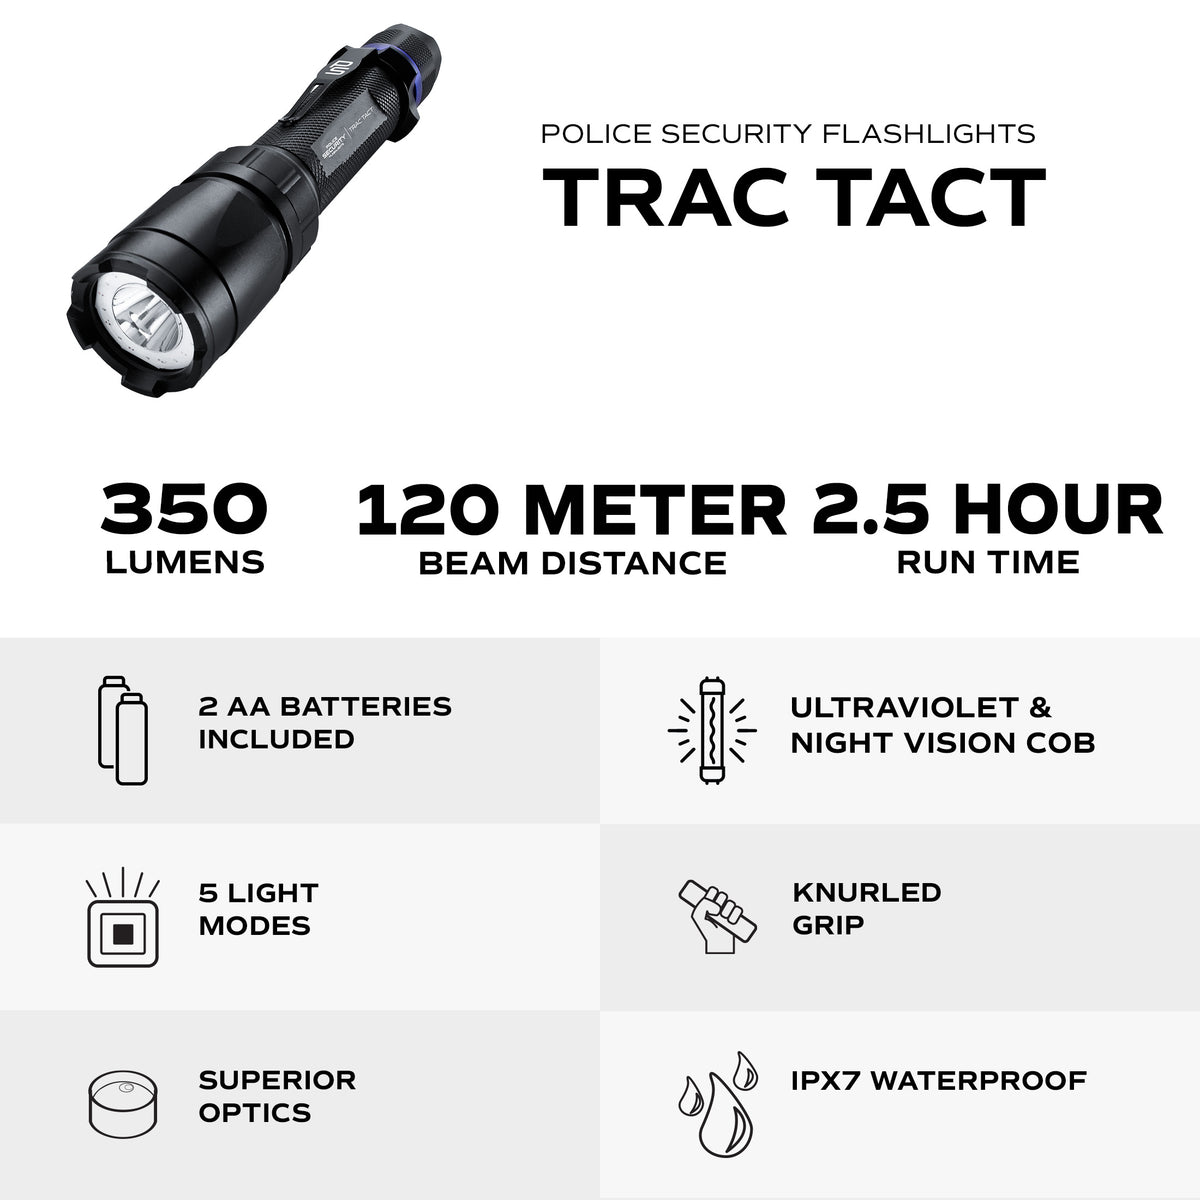 TRAC TACT 350 LUMEN WITH UV FLASHLIGHT